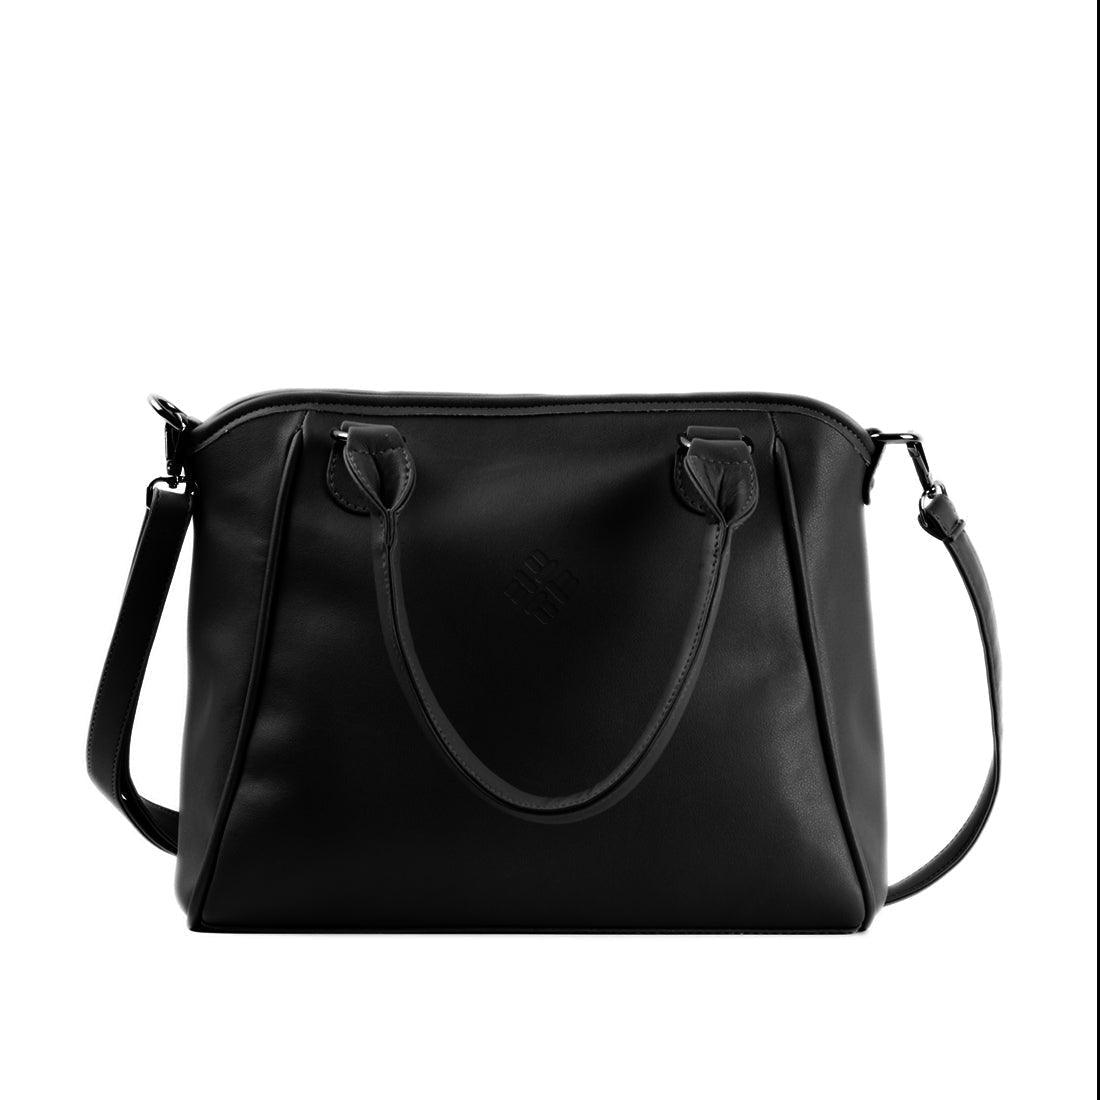 Black Ladies Handbag Floral - CANVAEGYPT